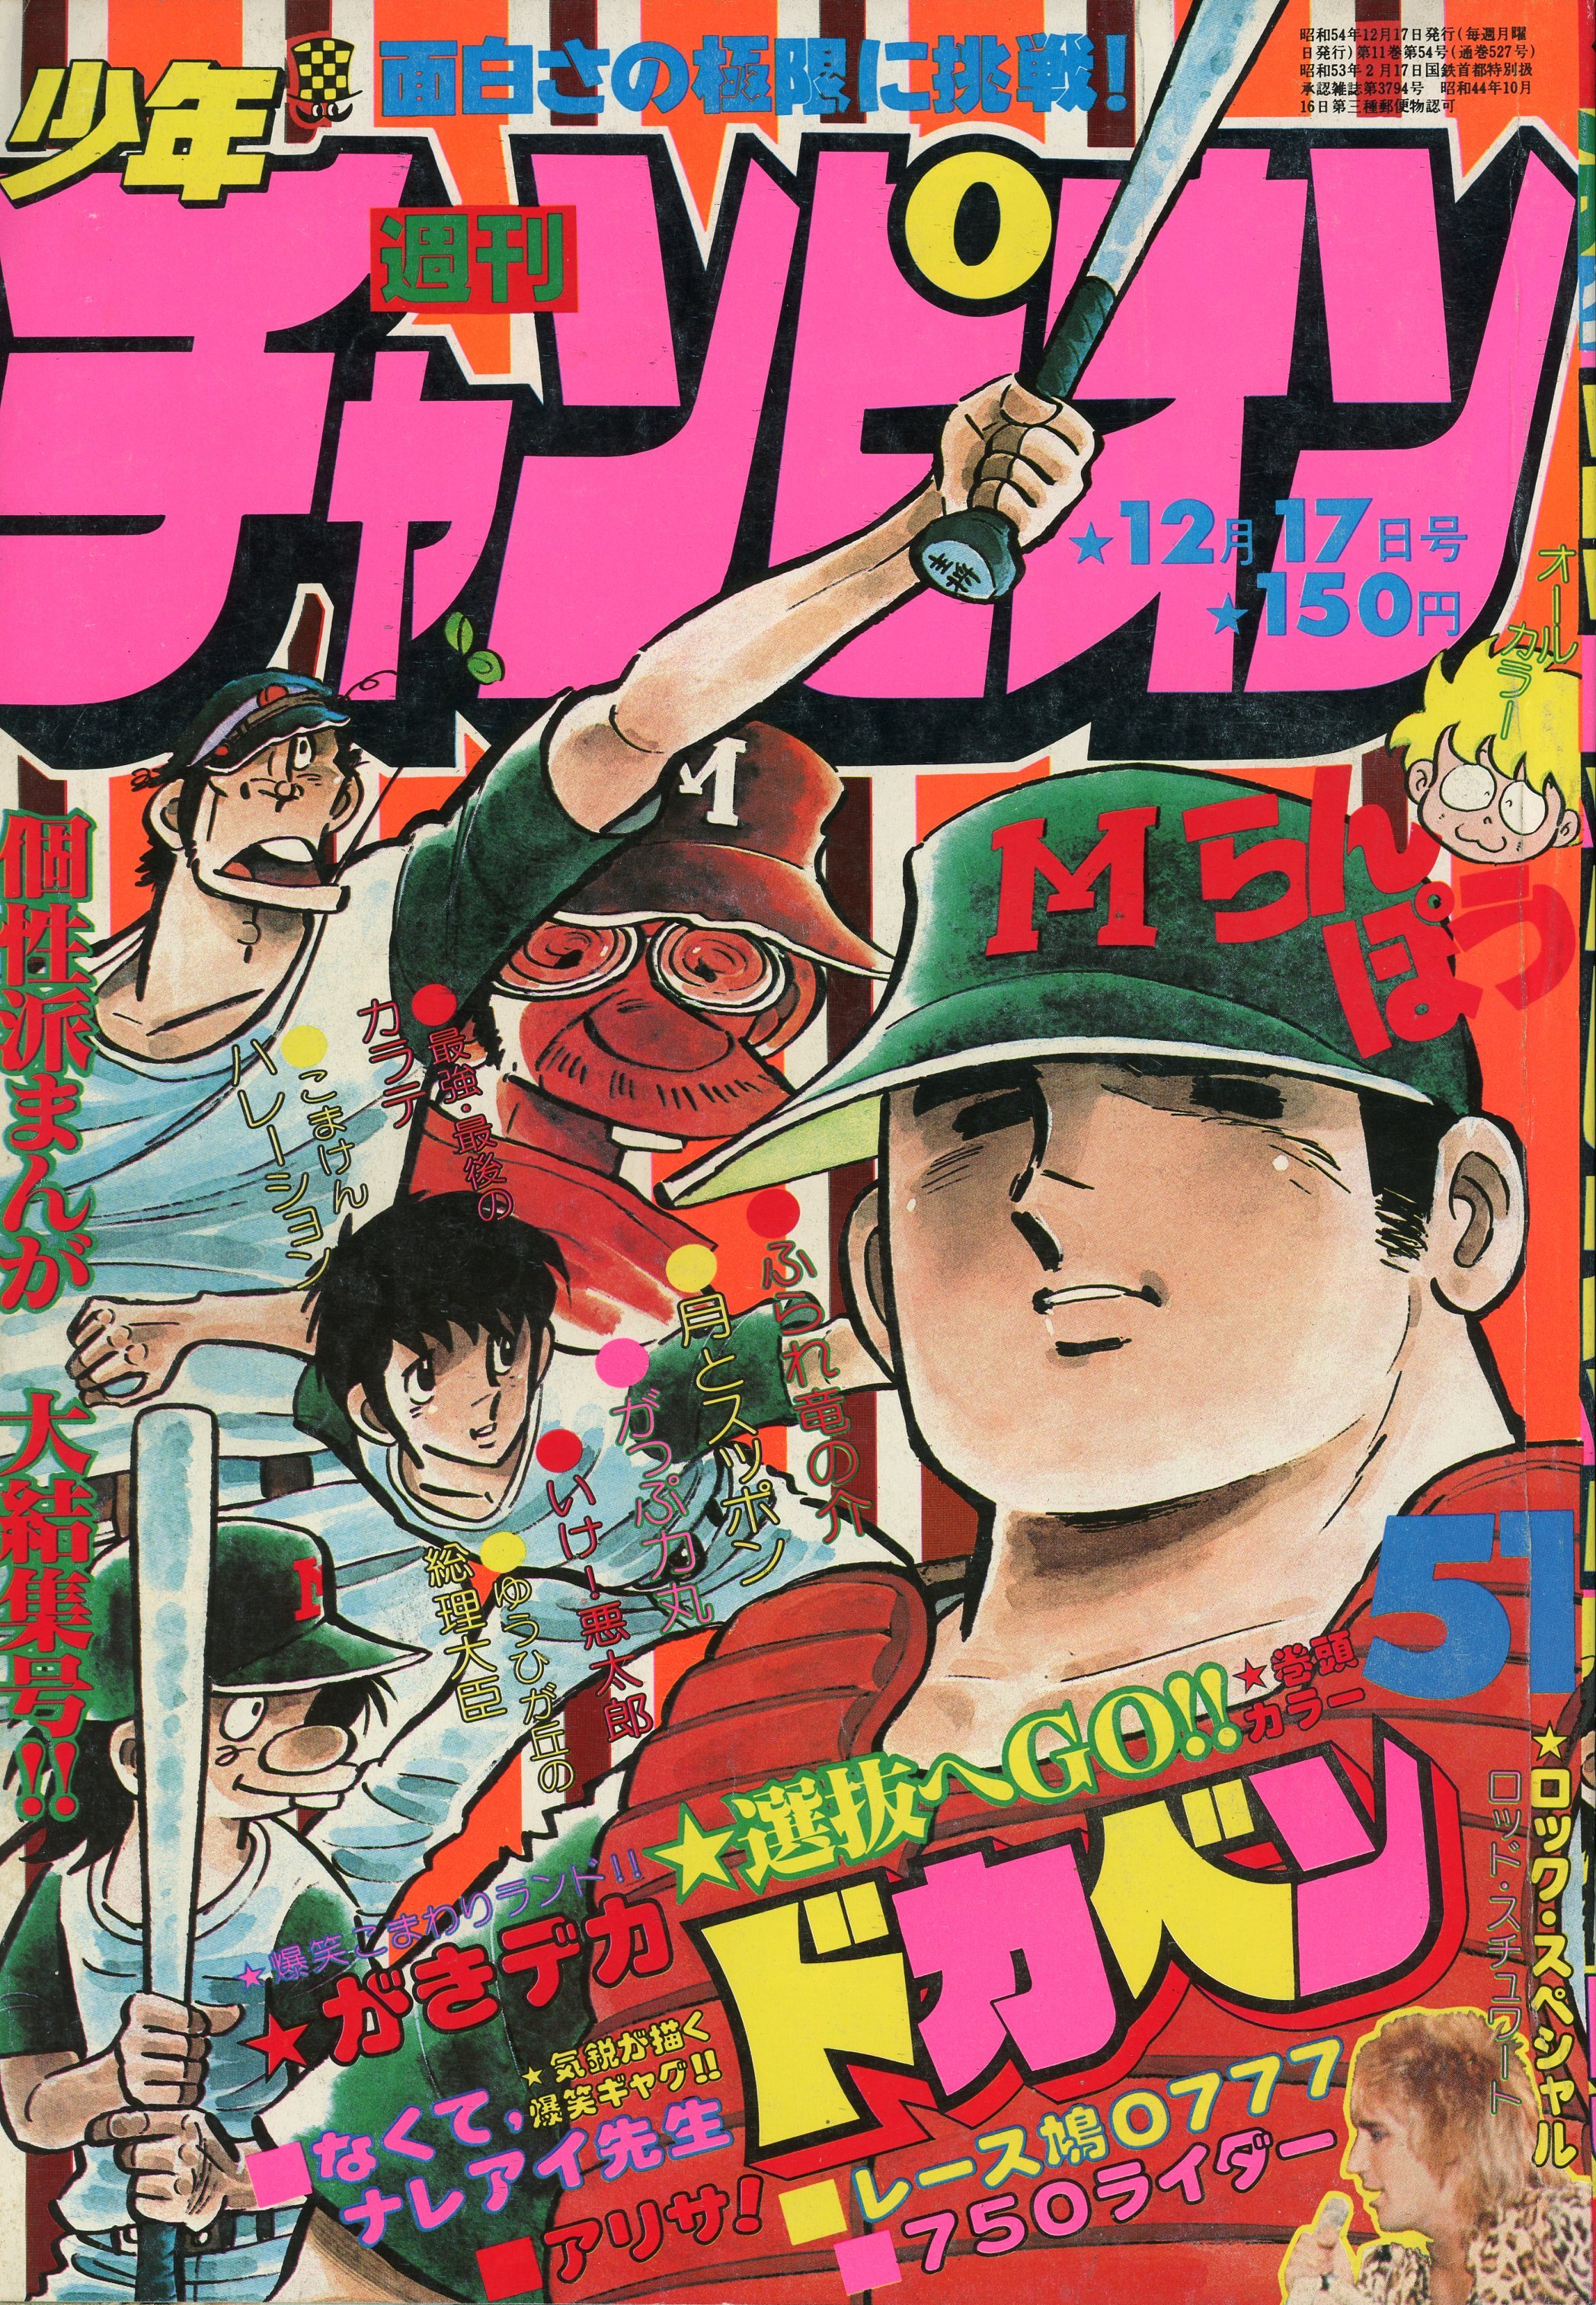 秋田書店 1979年(昭和54年)の漫画雑誌 週刊少年チャンピオン1979年 